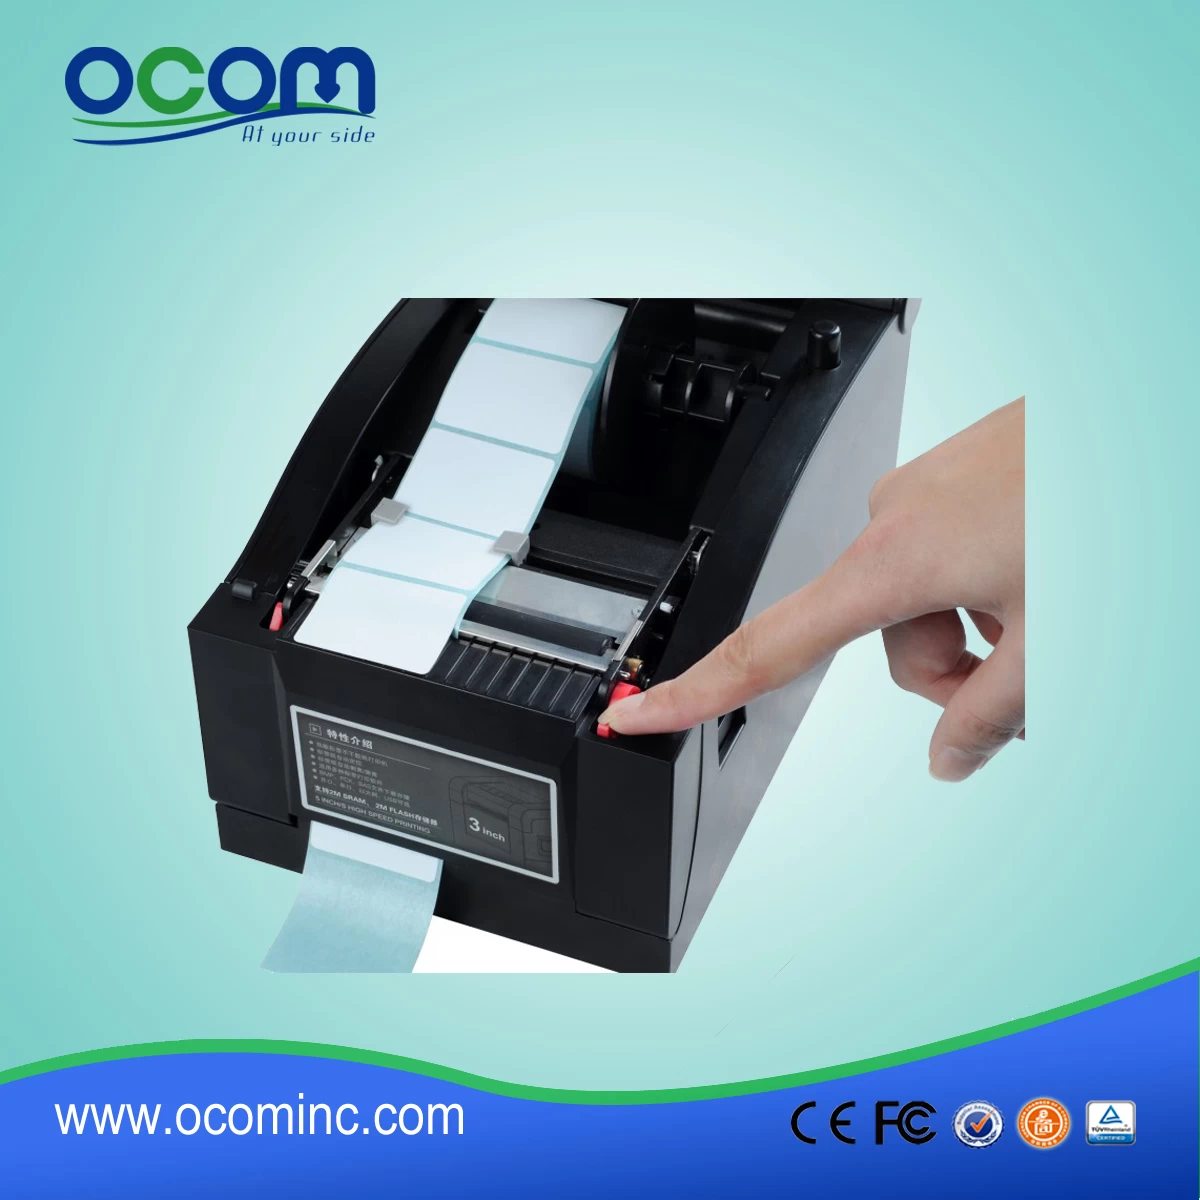 80mm Direct Thermal Barcode Label Printer, printed label (OCBP-005)